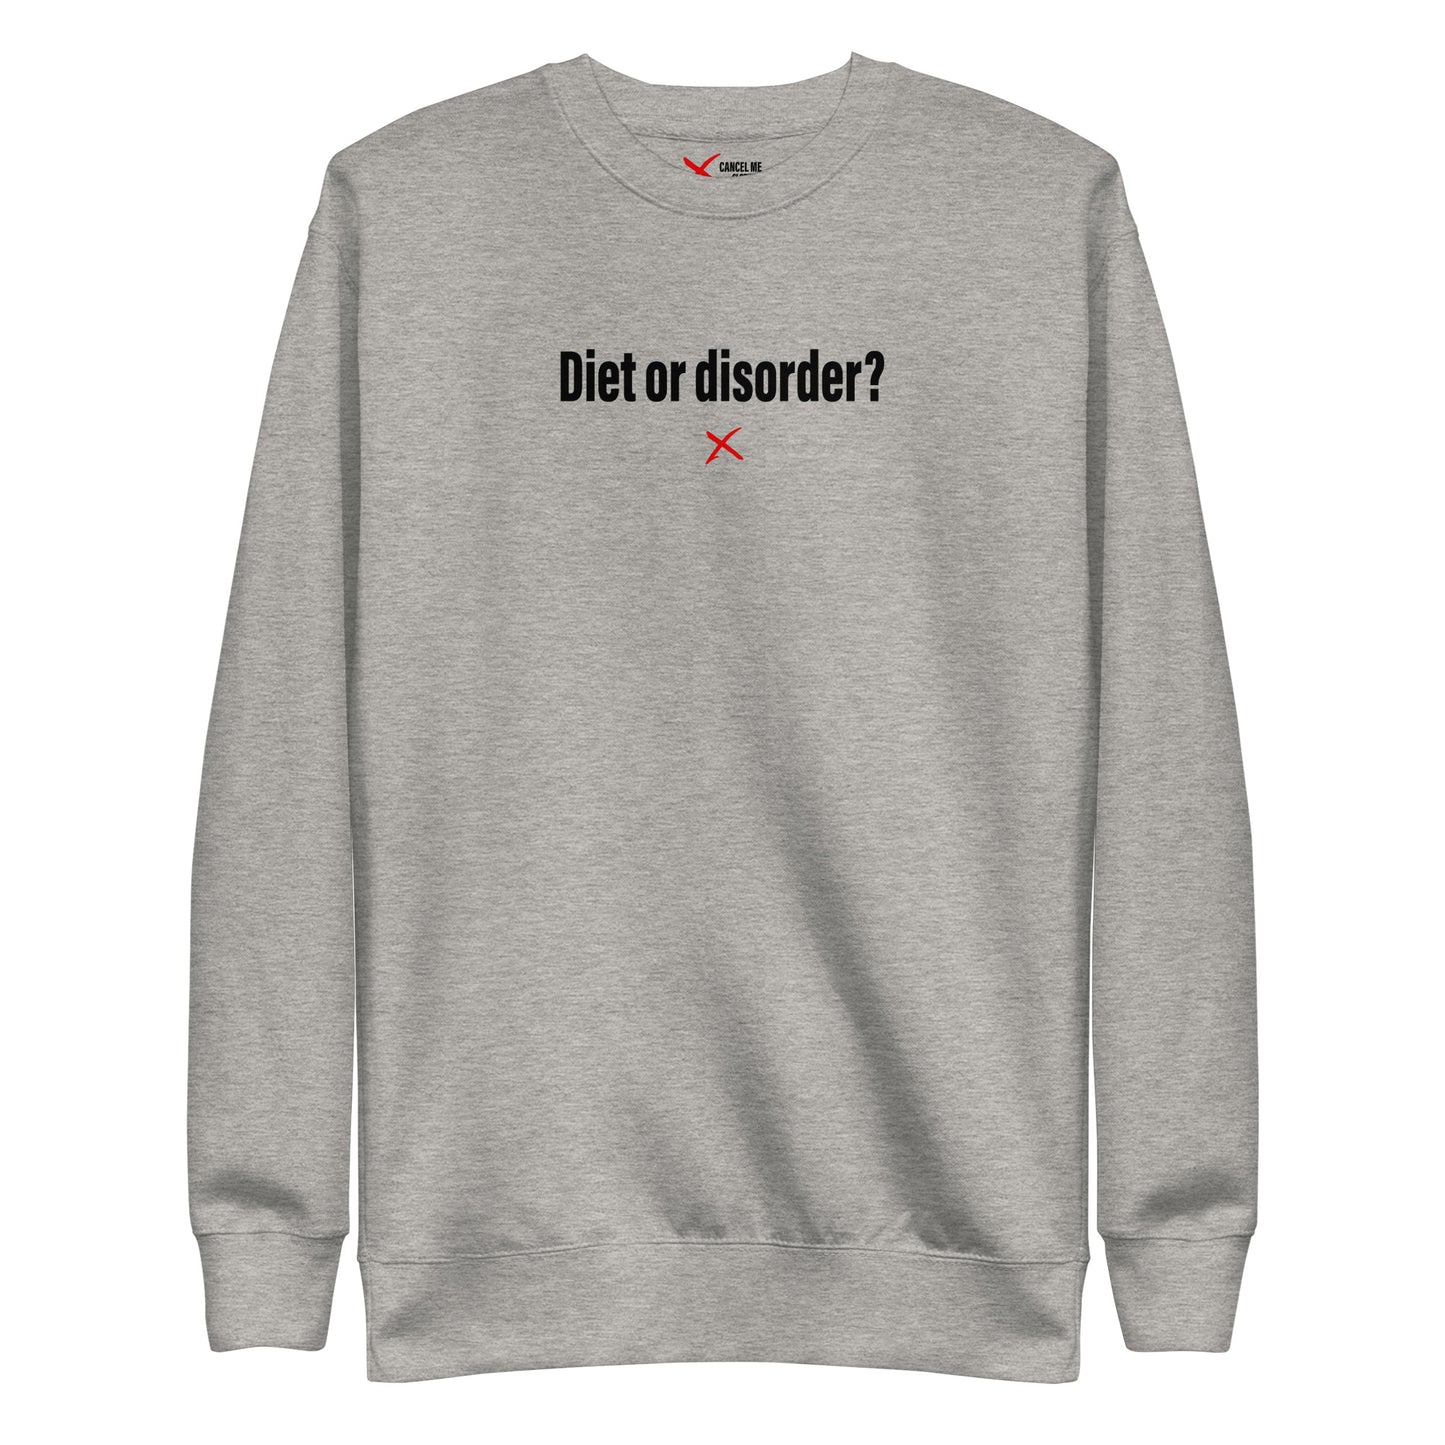 Diet or disorder? - Sweatshirt